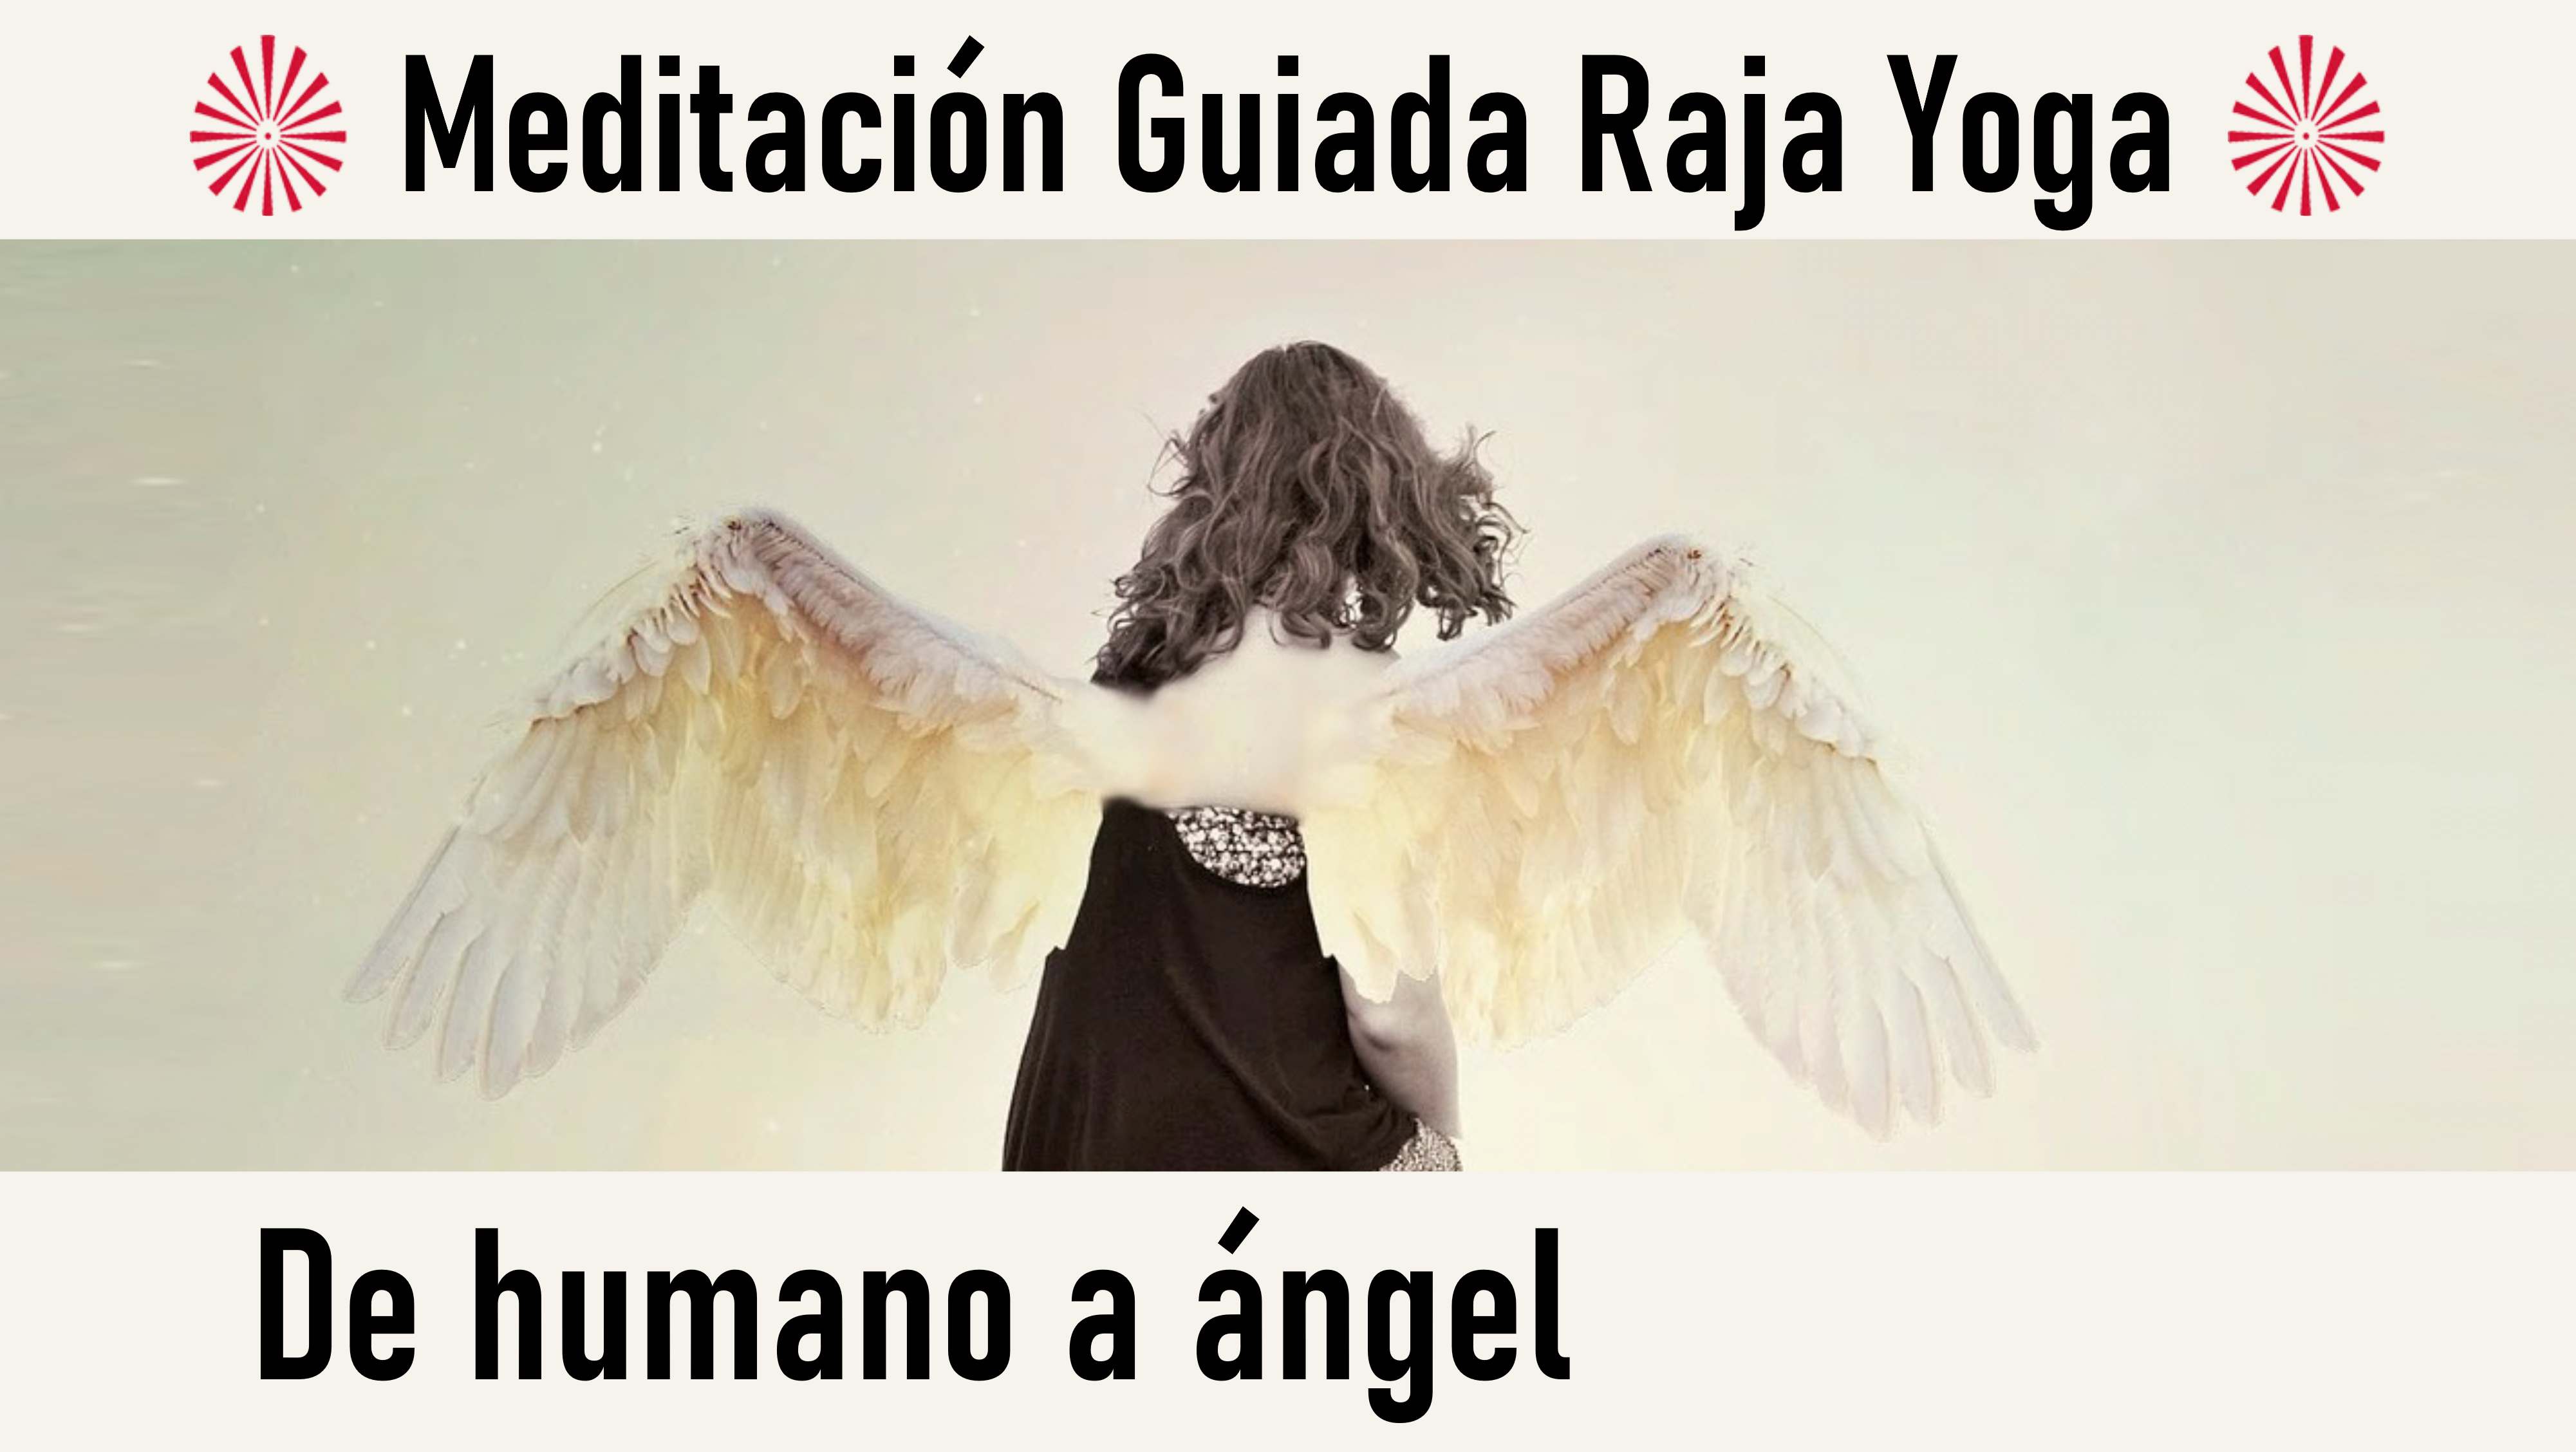 Meditación Raja Yoga: De humano a ángel (23 Agosto 2020) On-line desde Valencia